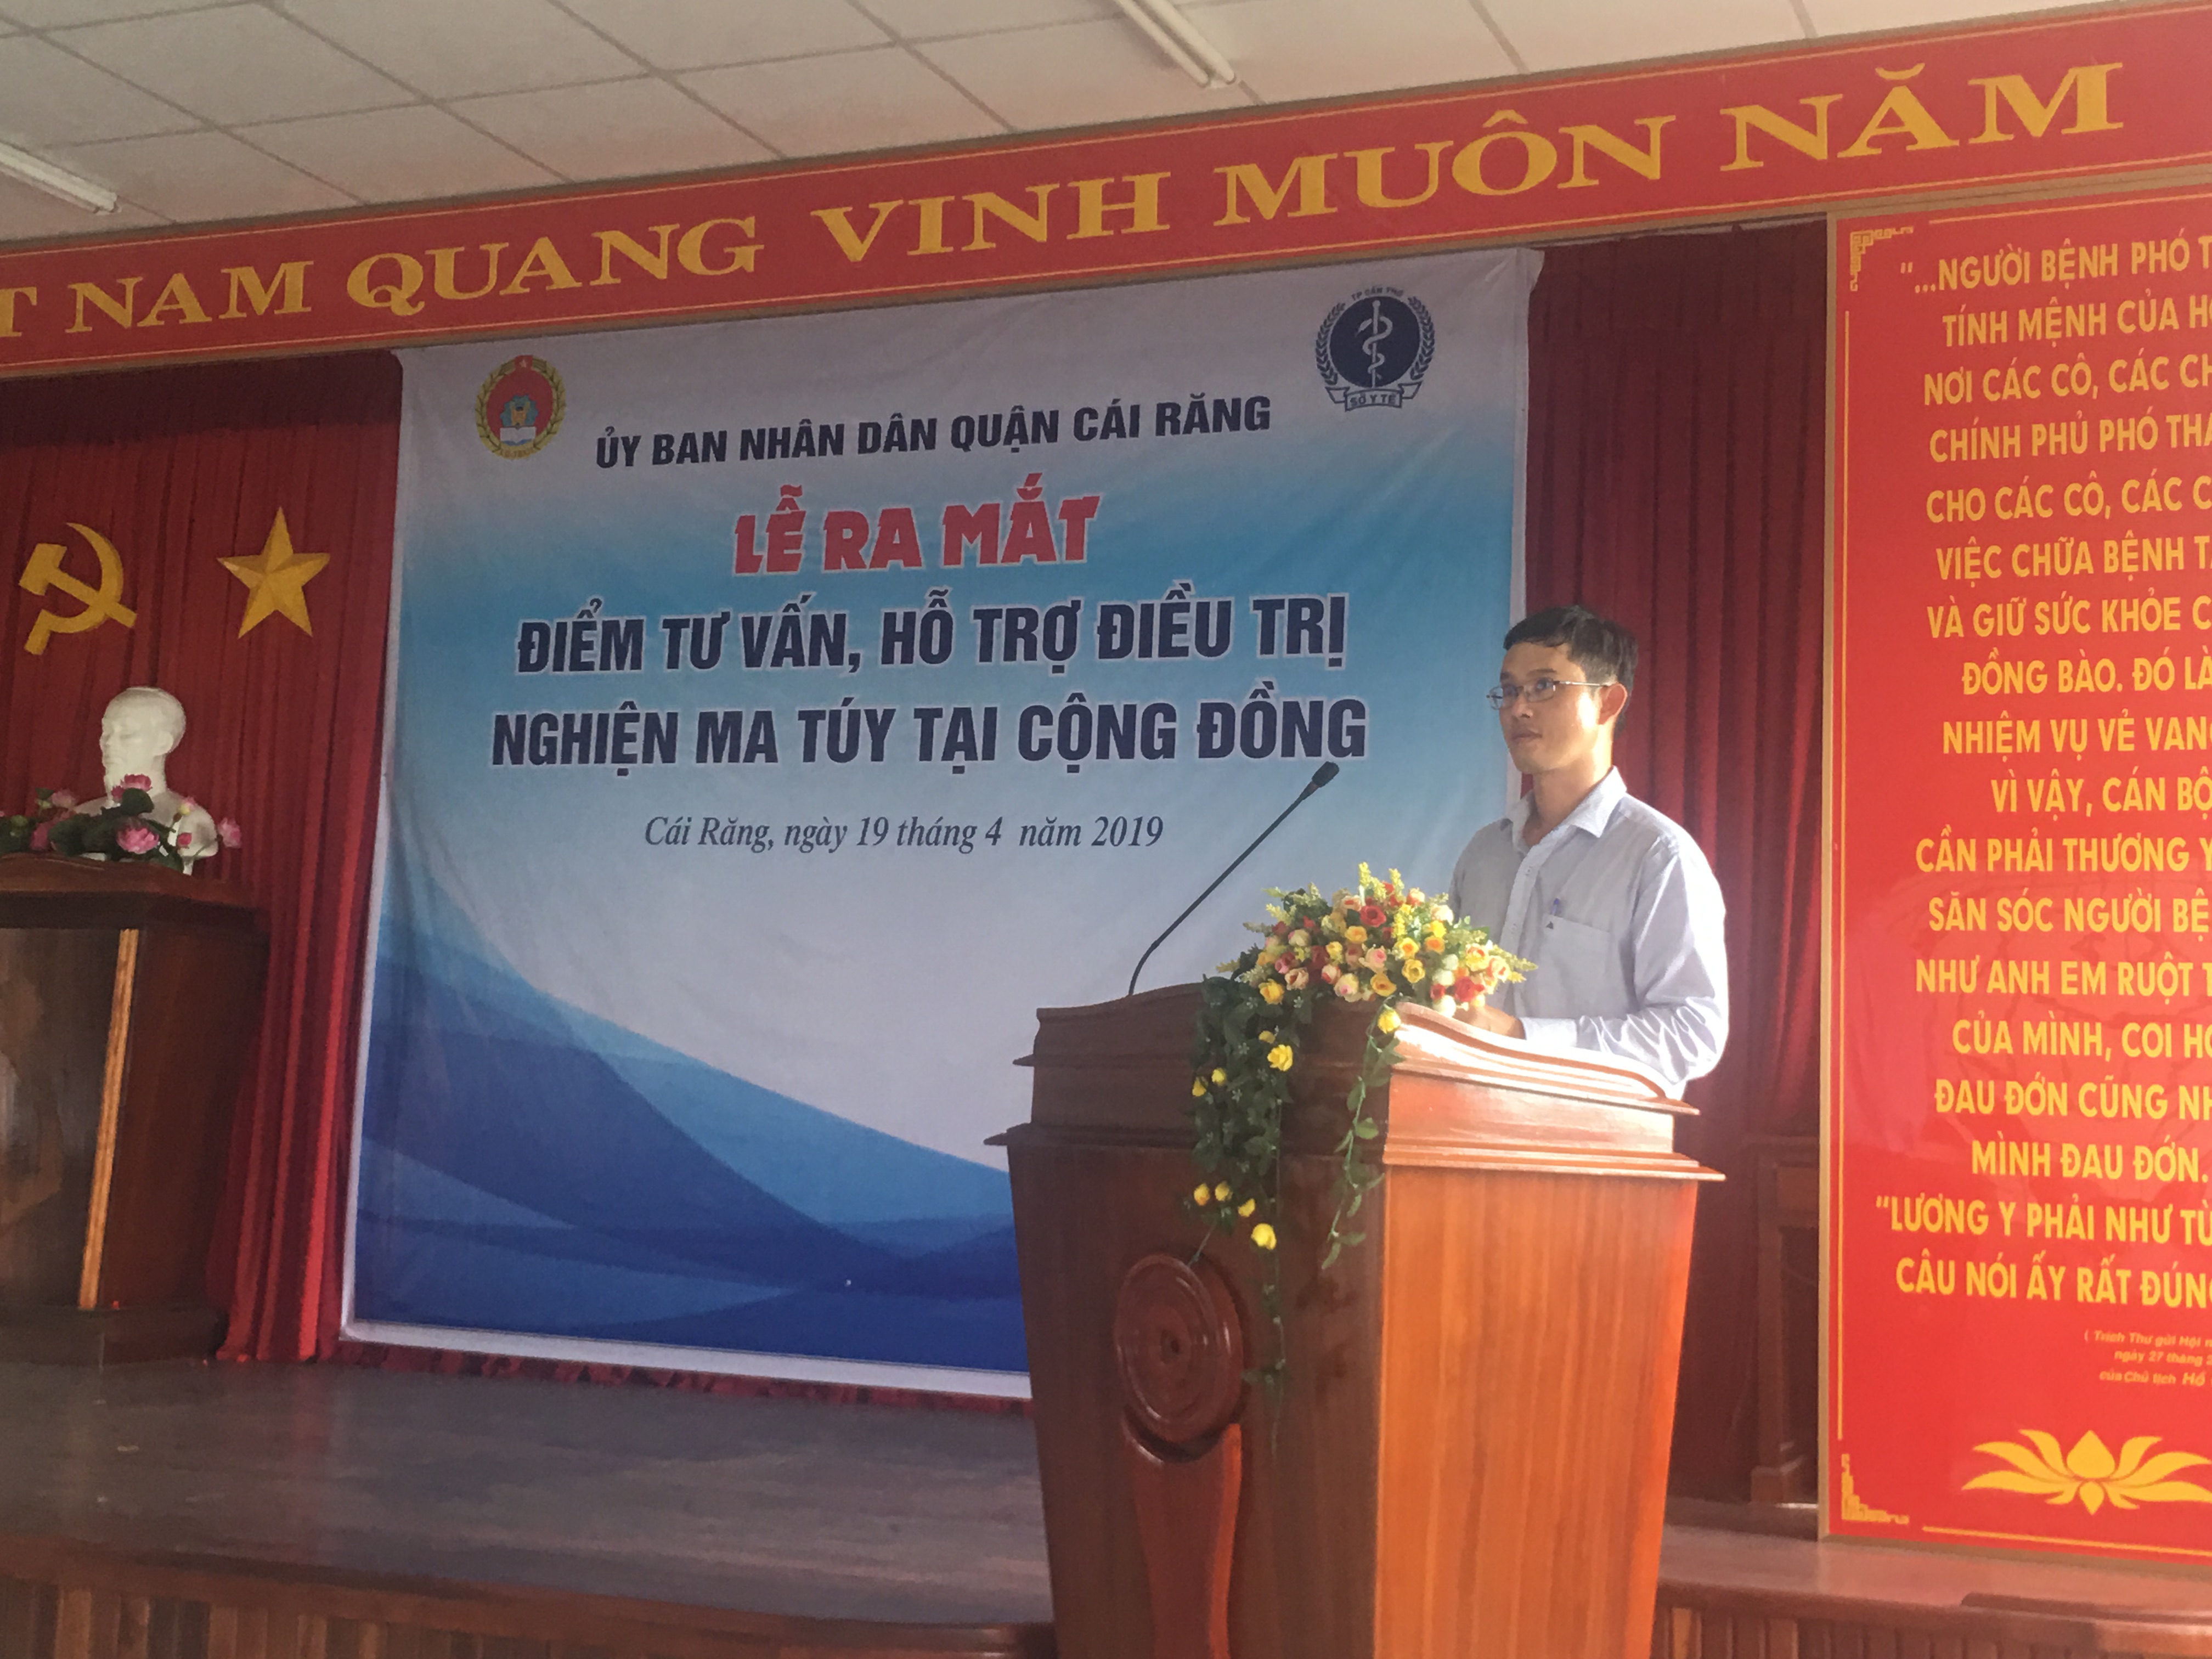 BSCKII Hà Tấn Vinh GĐ TTYT quận Cái Răng thông qua quy chế hoạt động điểm tư vấn, hỗ trợ điều trị nghiện ma túy tại cộng đồng